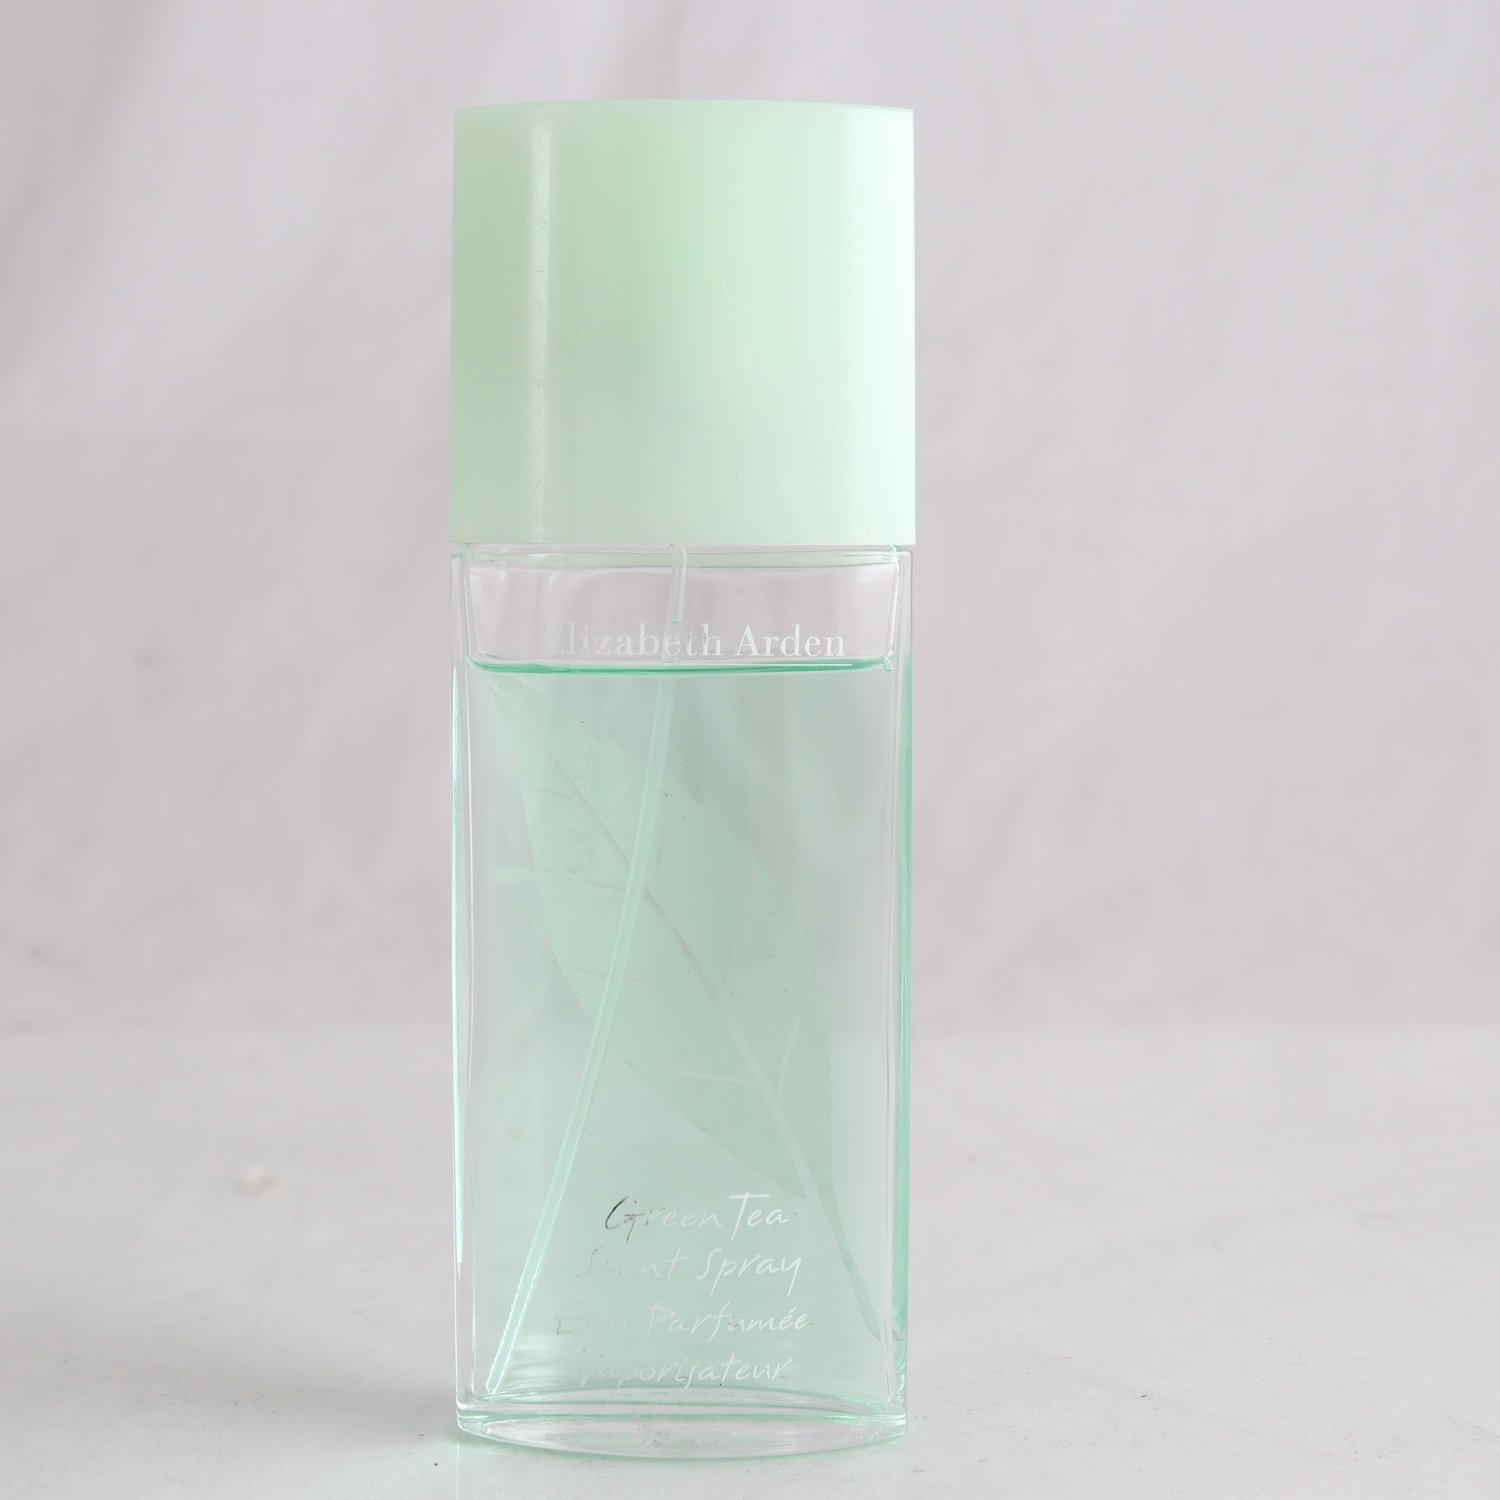 Parfym, Elisabeth Arden, Eau Perfume Vaporisateur, 100 ml